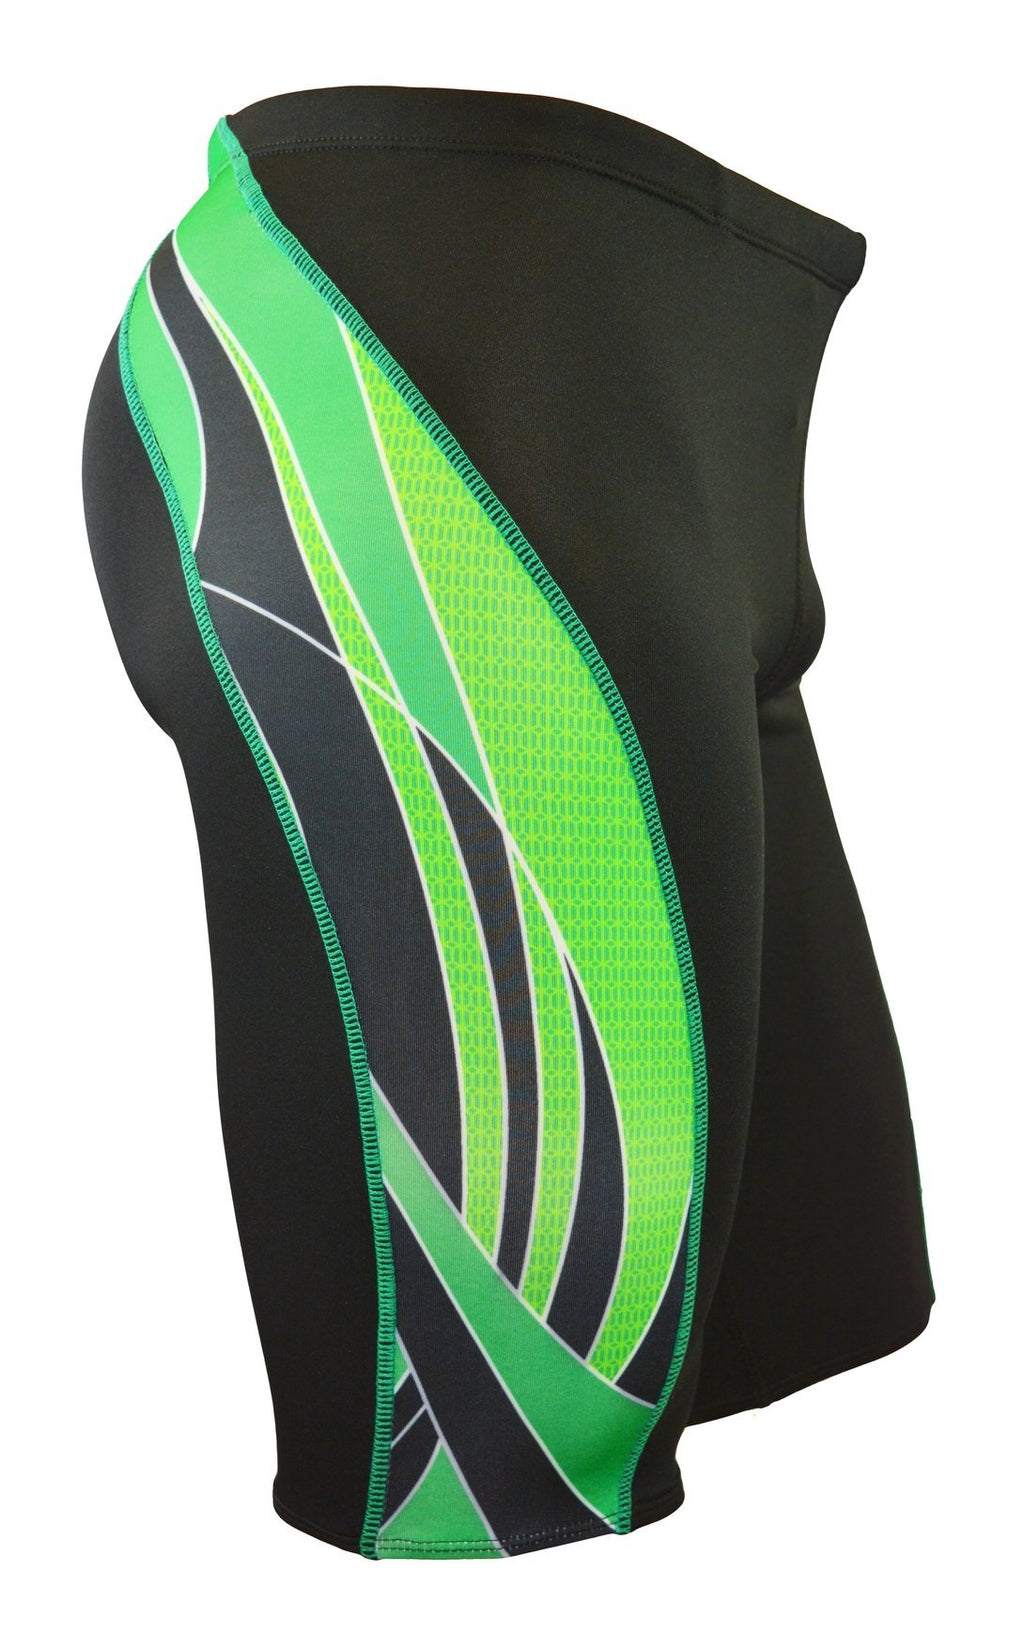 [AUSTRALIA] - Adoretex Boy's/Men's Side Wings Swim Jammer Swimsuit Black/Green 36 